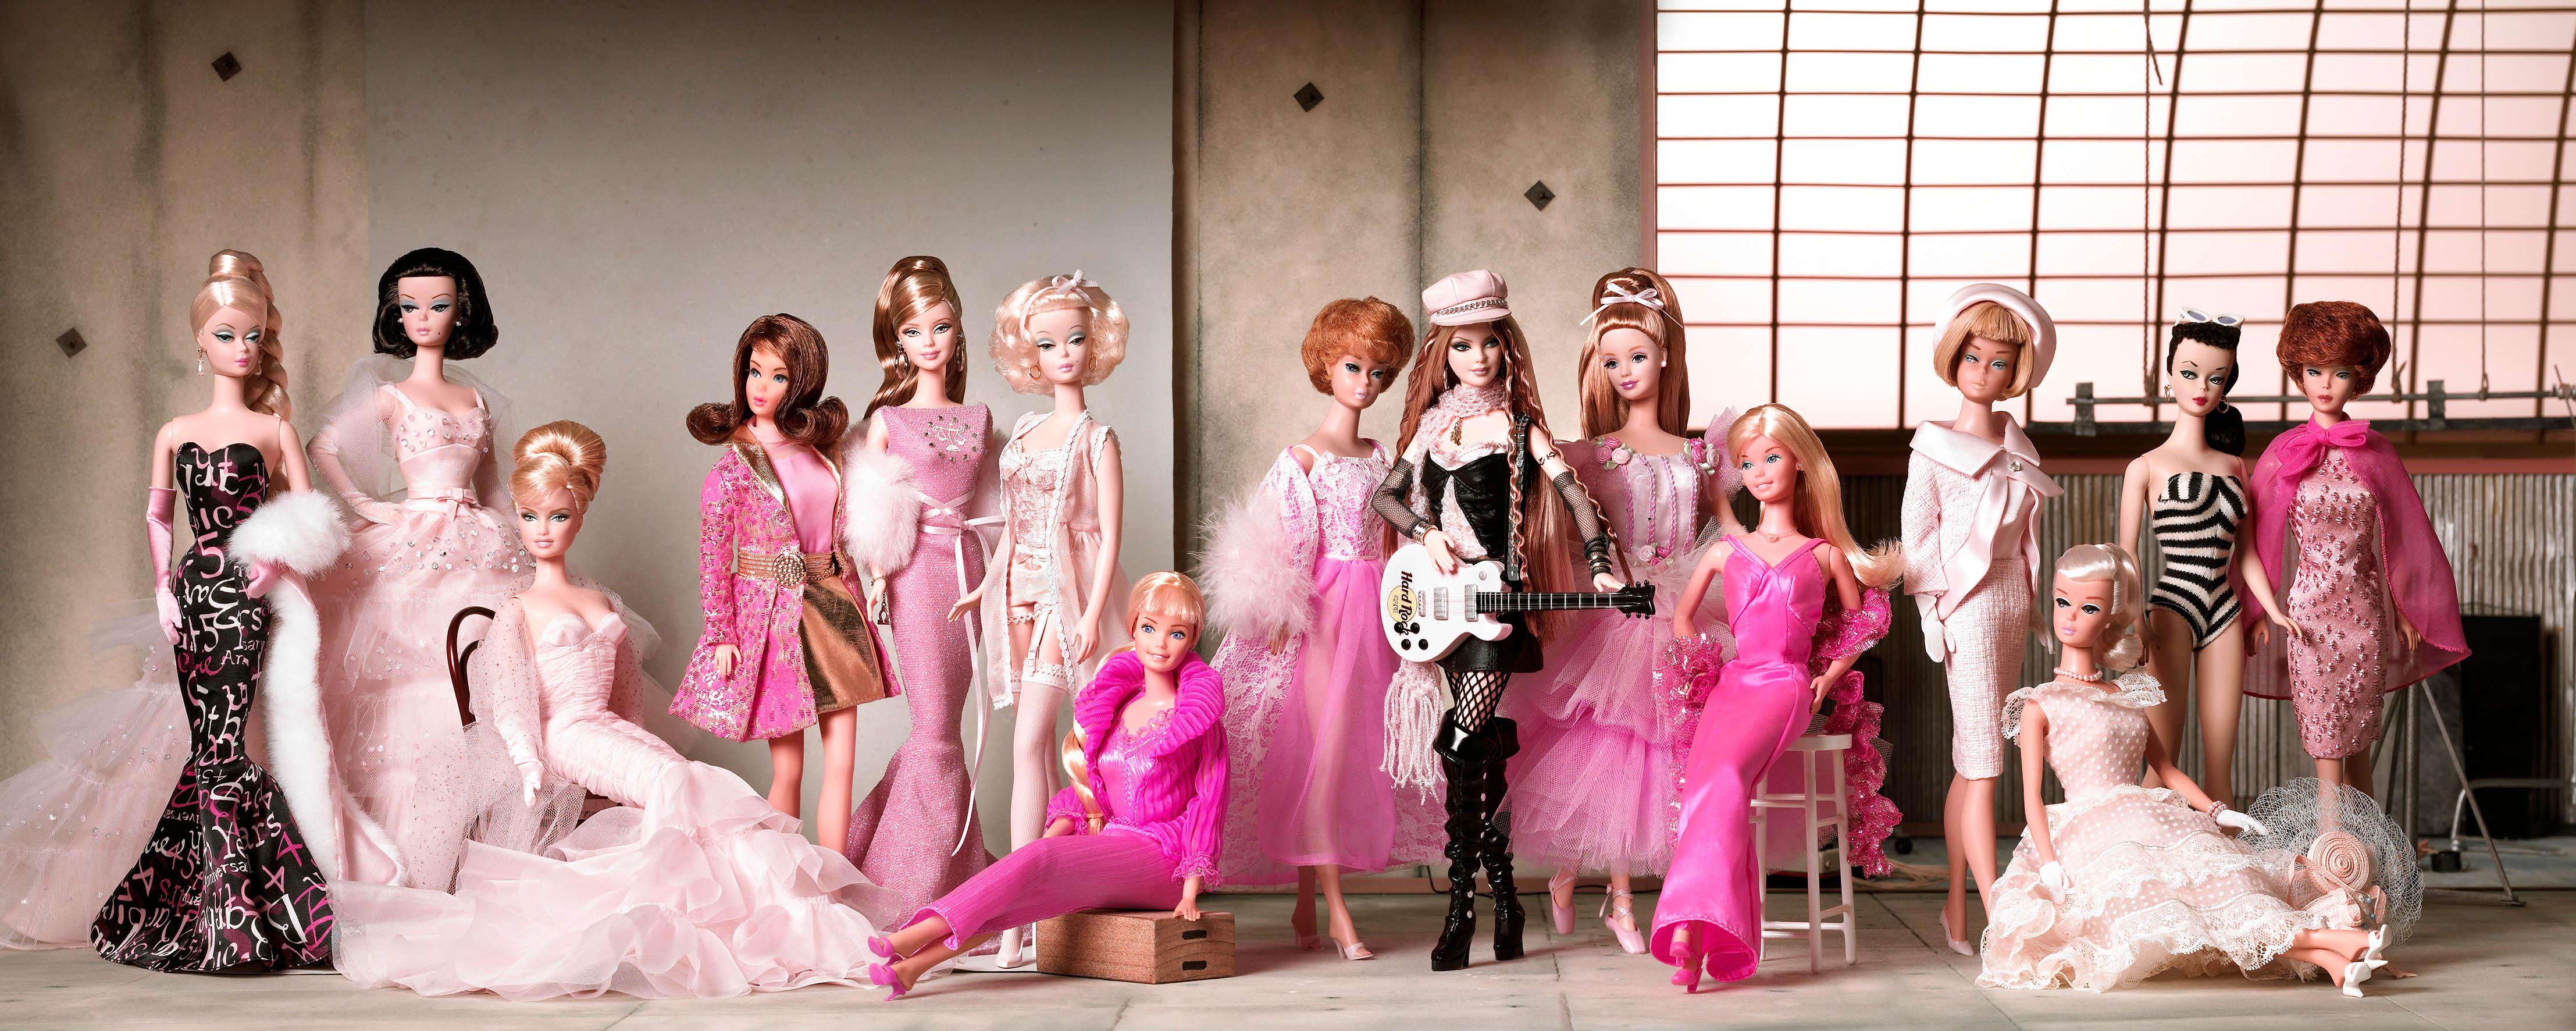 La storia di Barbie, qui in uno scatto per la linea Collectors, dal modello Teen Age Fashion Model Barbie Doll (1959) fino alla Hard Rock Cafe #2Barbie (2004). (foto ©Mattel Inc.)